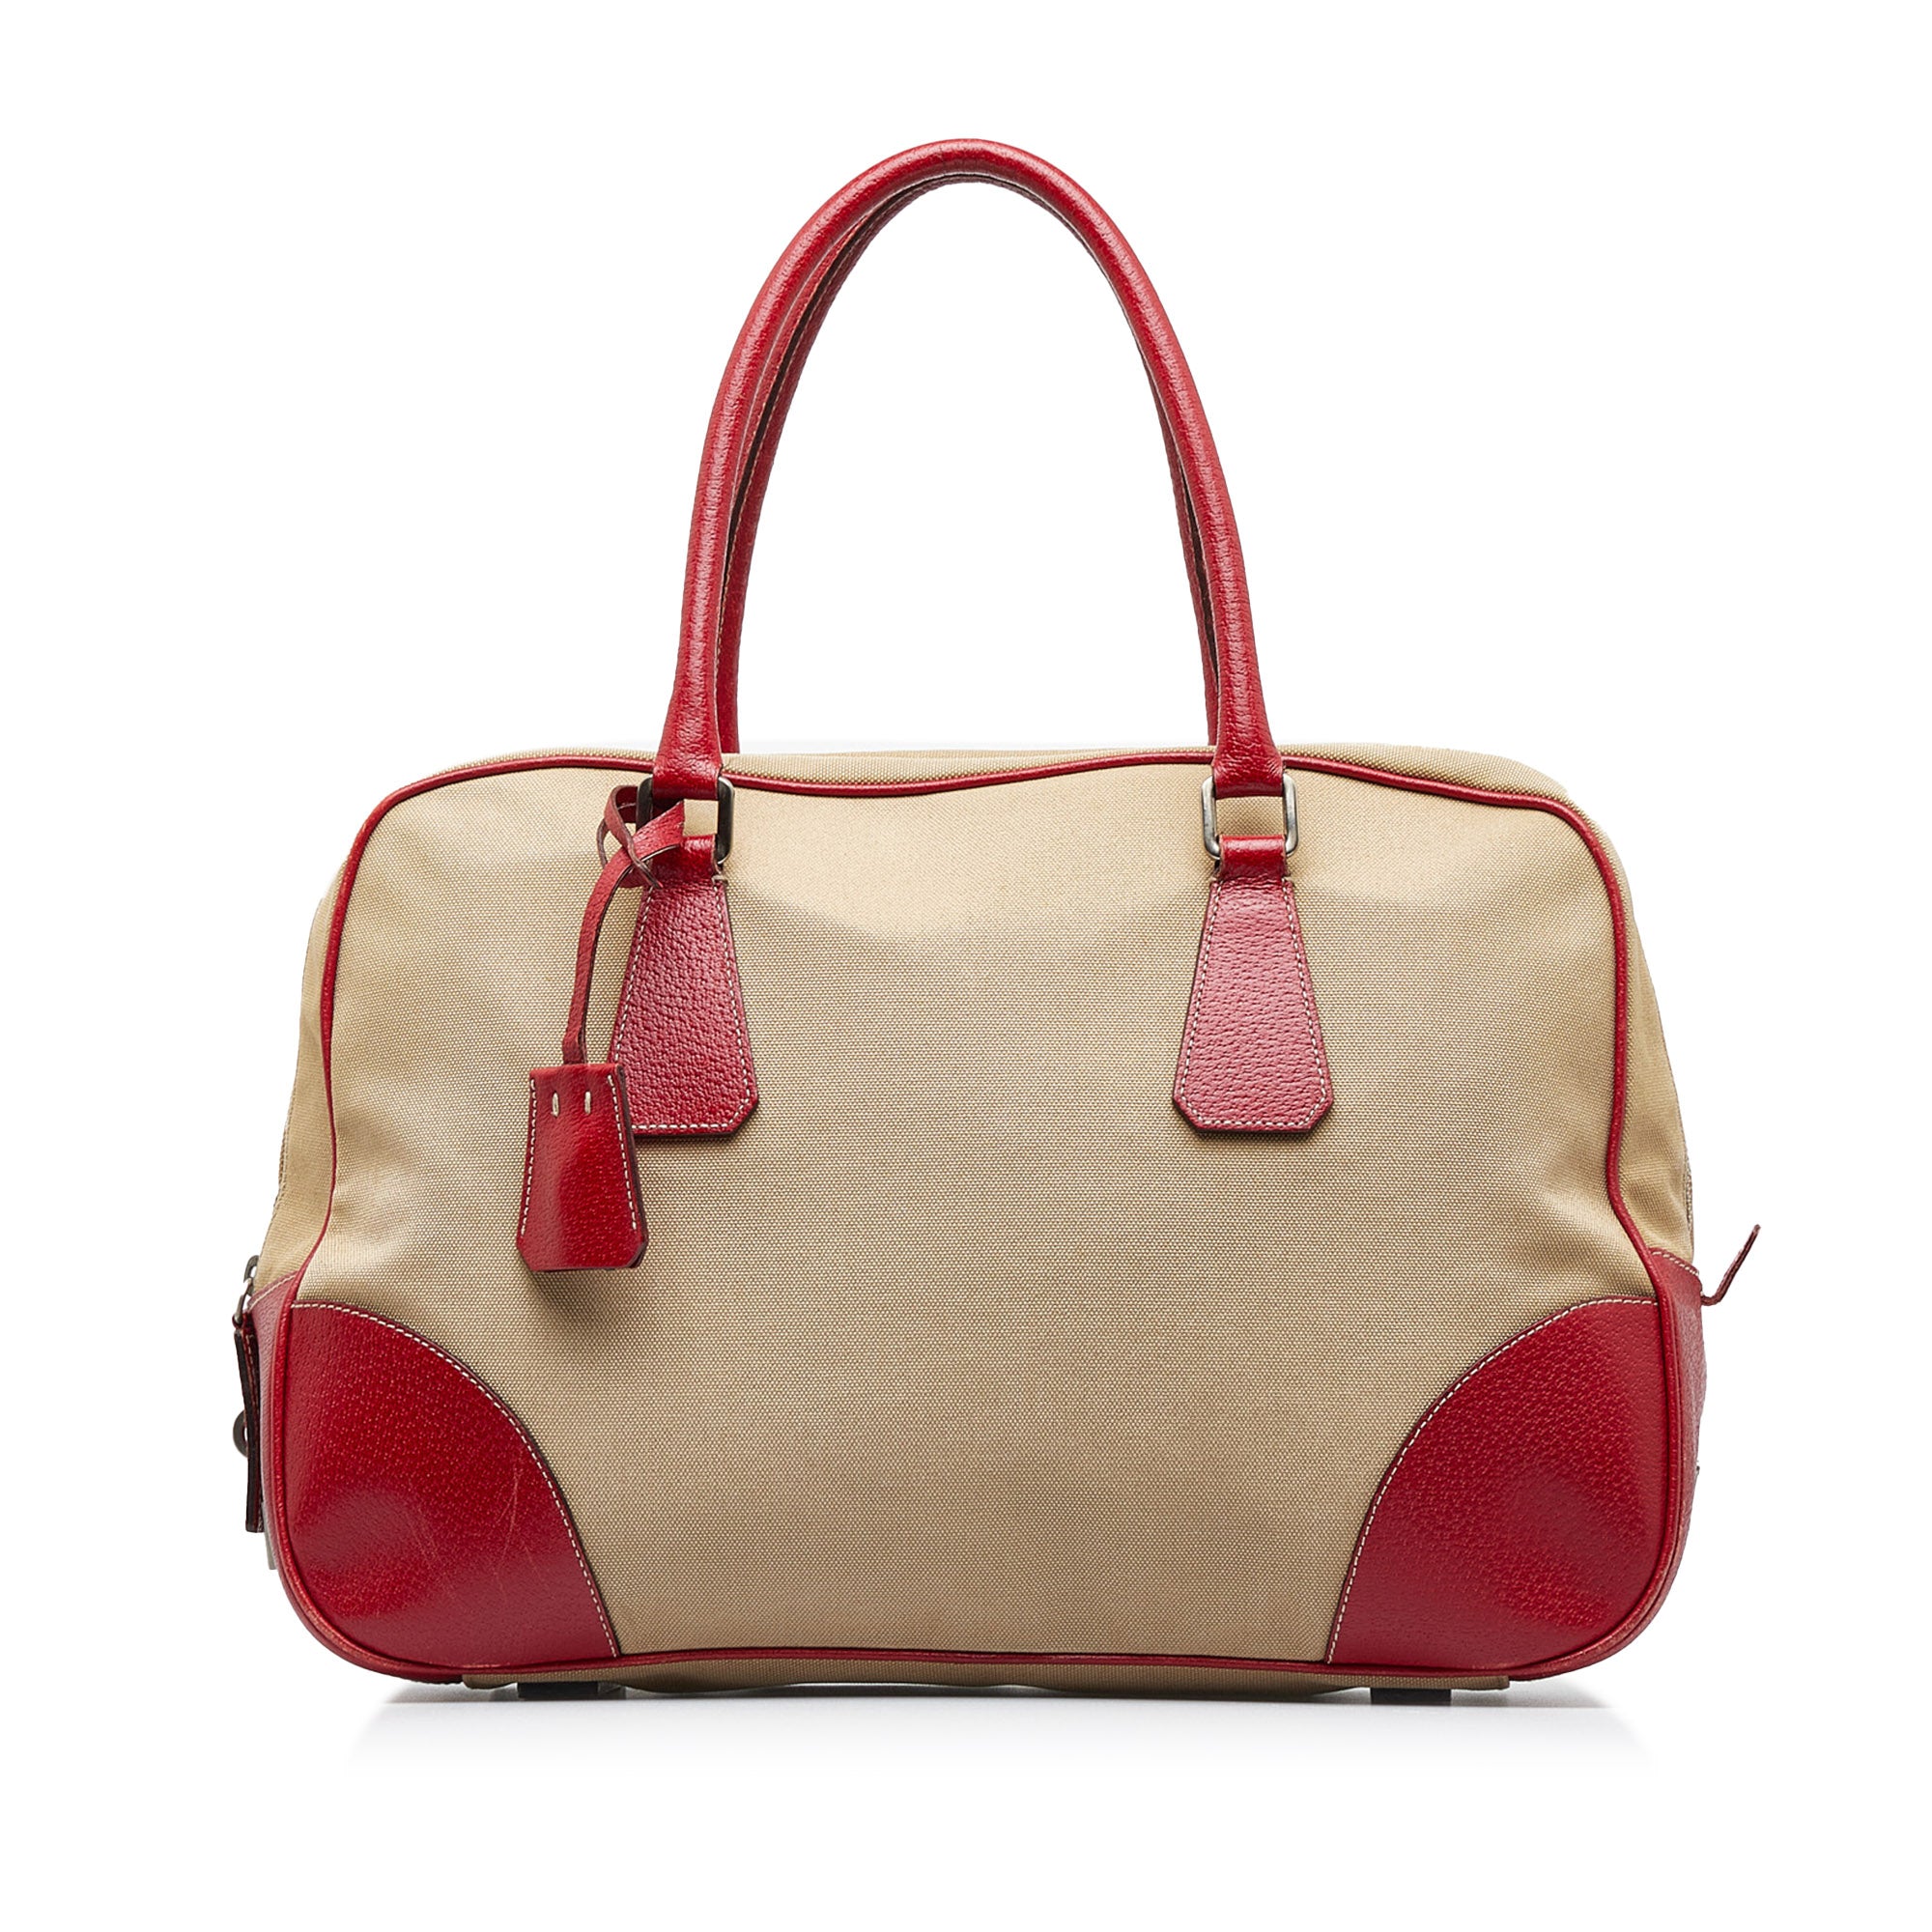 Authentic PRADA Bauletto leather bag handbag Crossbody Bag